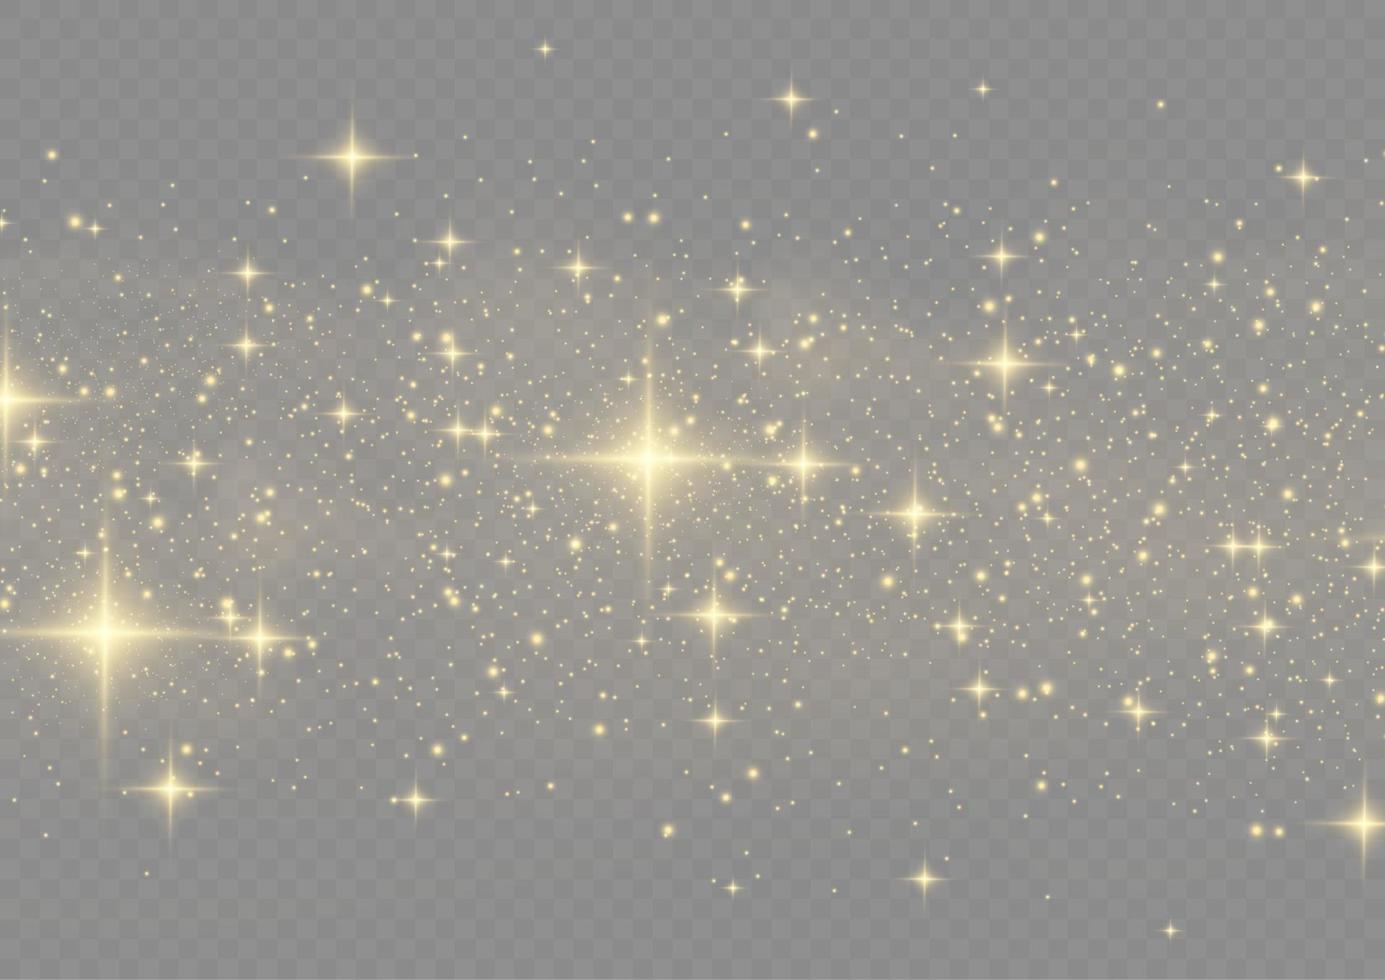 les étincelles de poussière et les étoiles dorées brillent d'une lumière spéciale. le vecteur scintille. effet de lumière de noël.